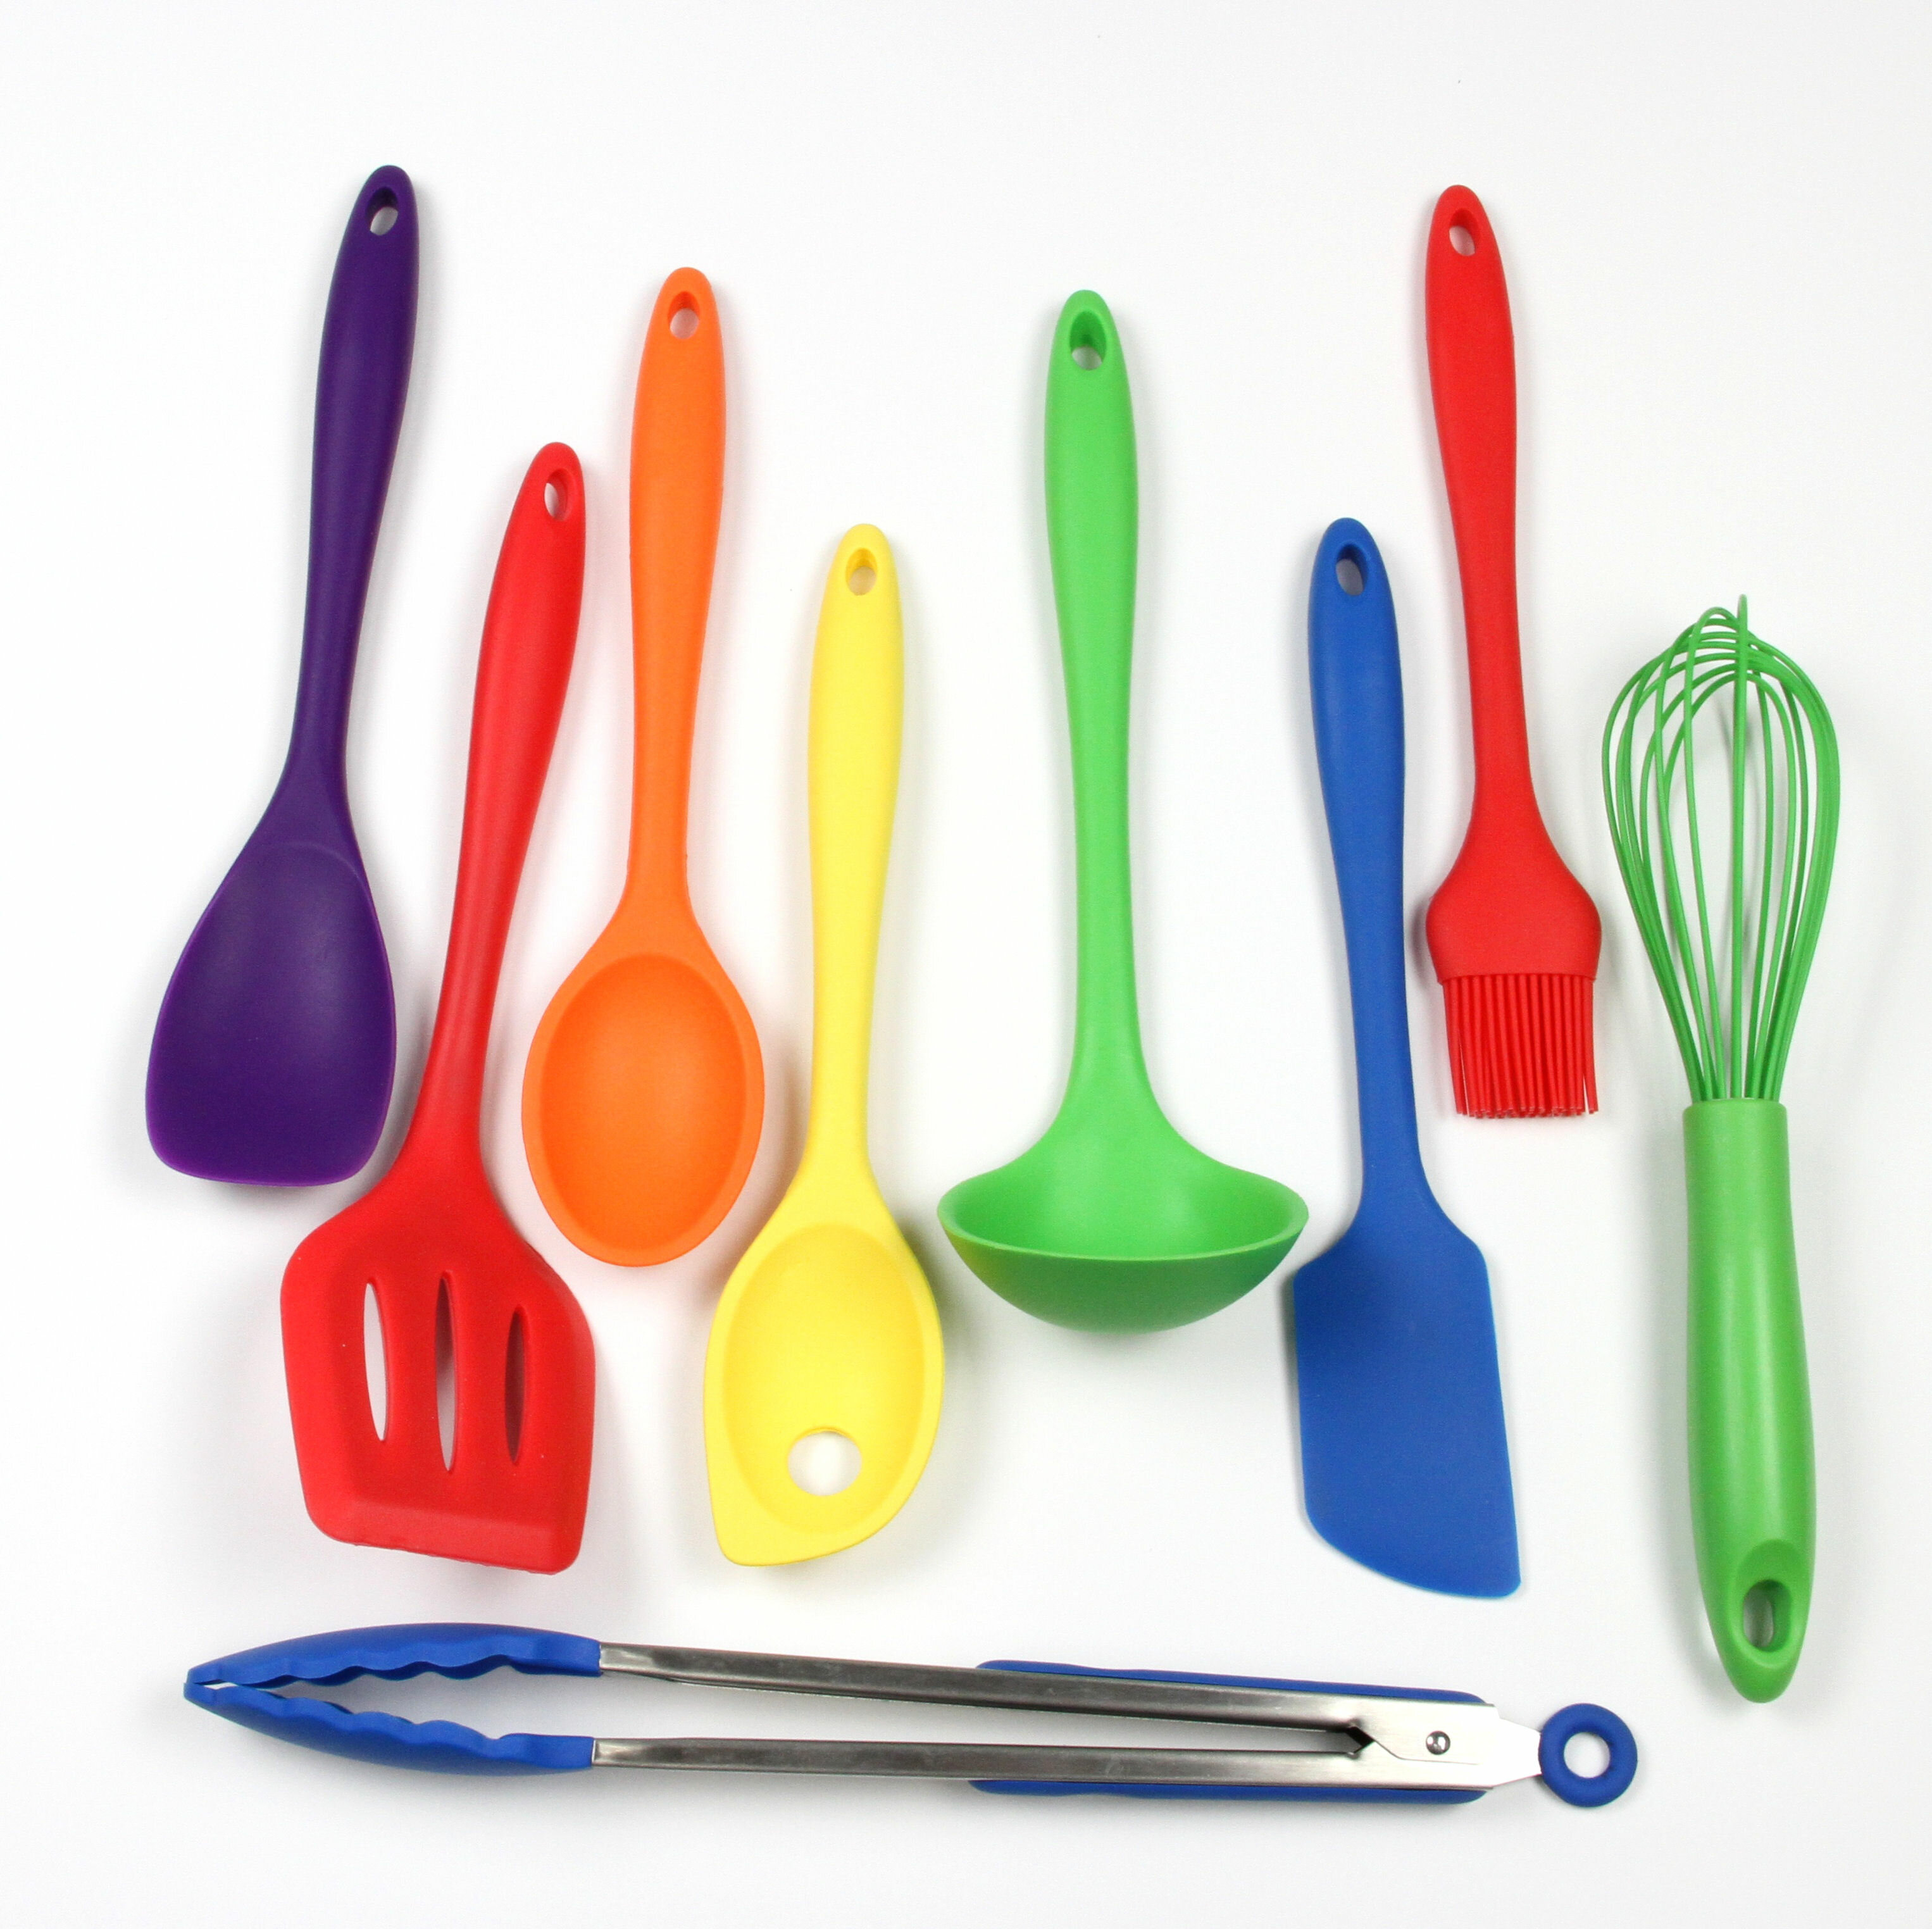 https://assets.wfcdn.com/im/56321715/compr-r85/8489/84890325/silicone-assorted-kitchen-utensil-set.jpg